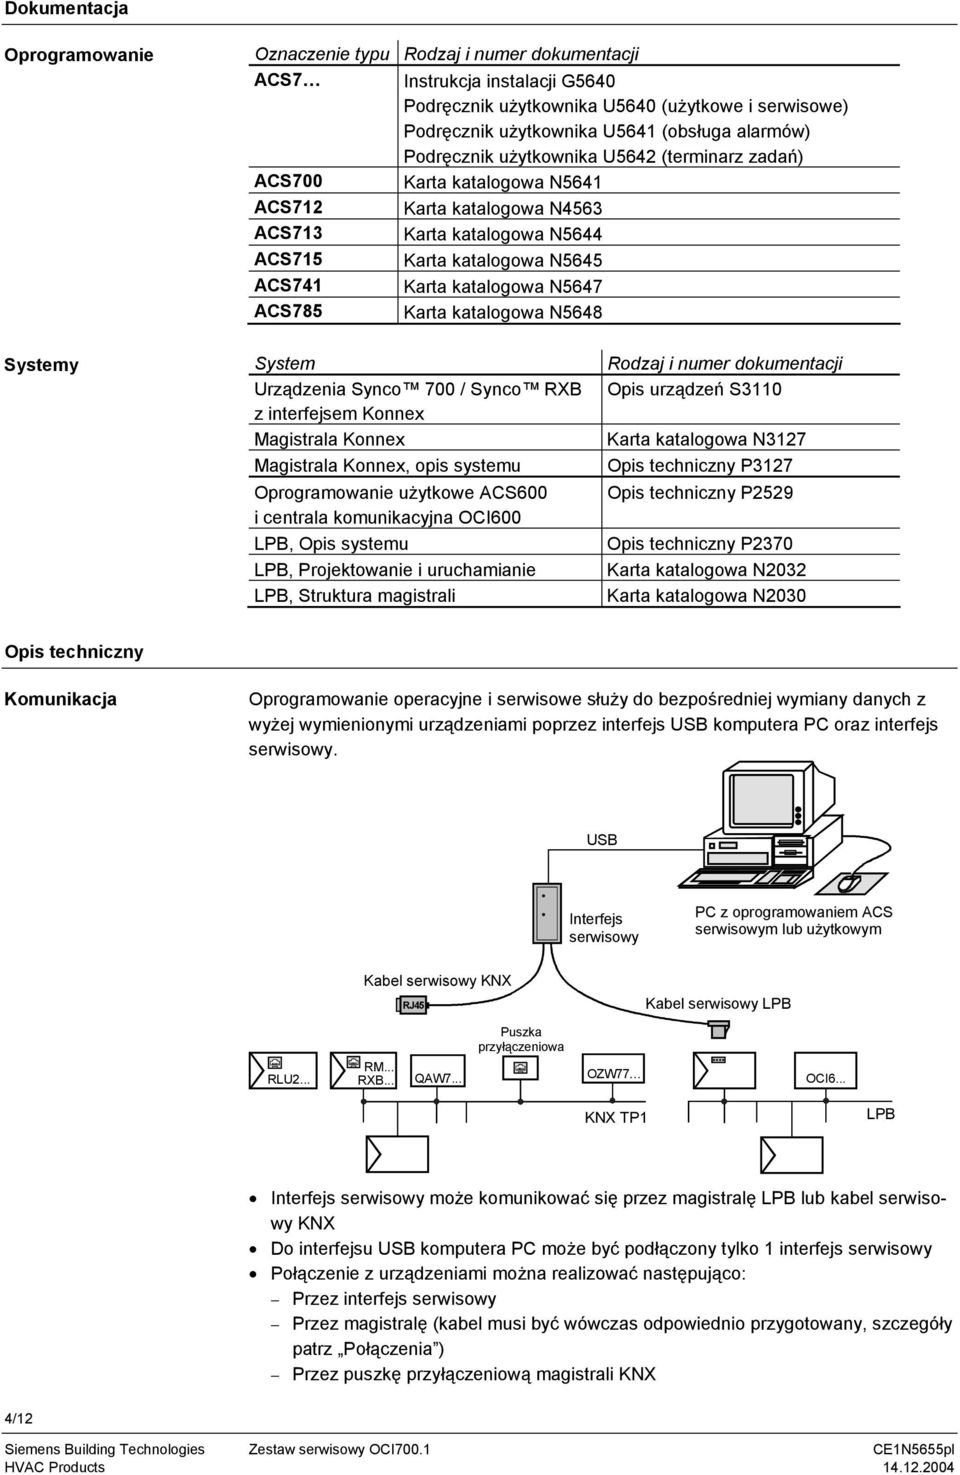 N5647 ACS785 Karta katalogowa N5648 Systemy System Urządzenia Synco 700 / Synco RXB z interfejsem Konnex Magistrala Konnex Magistrala Konnex, opis systemu Oprogramowanie użytkowe ACS600 i centrala